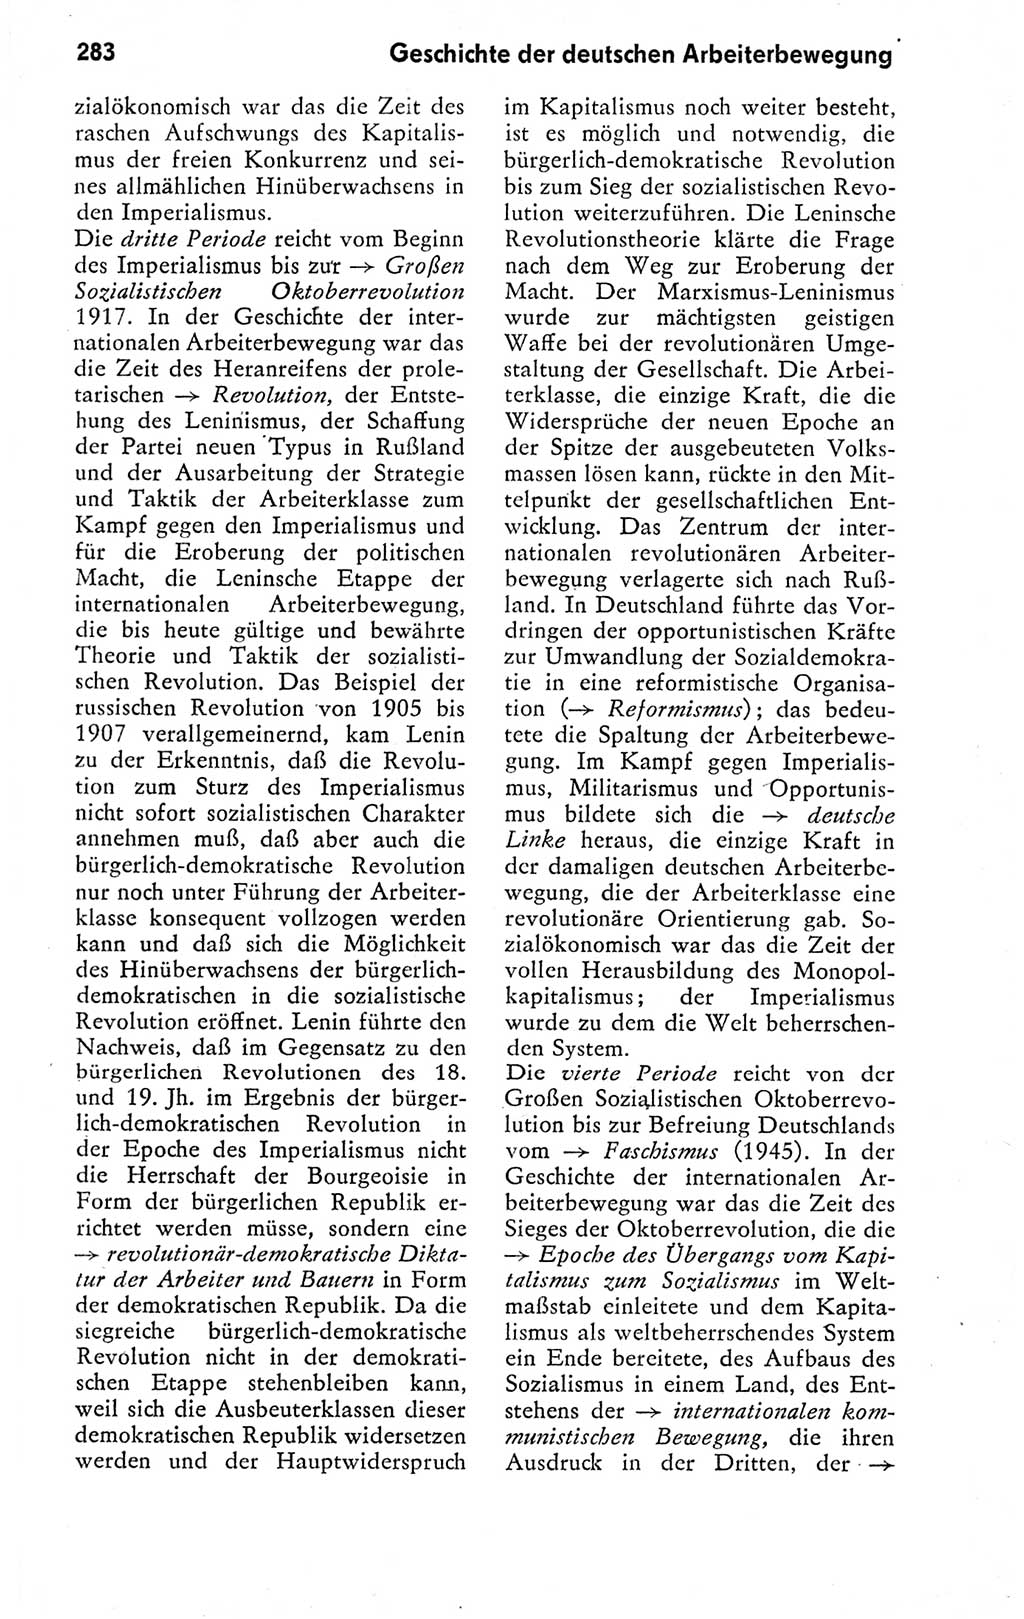 Kleines politisches Wörterbuch [Deutsche Demokratische Republik (DDR)] 1978, Seite 283 (Kl. pol. Wb. DDR 1978, S. 283)